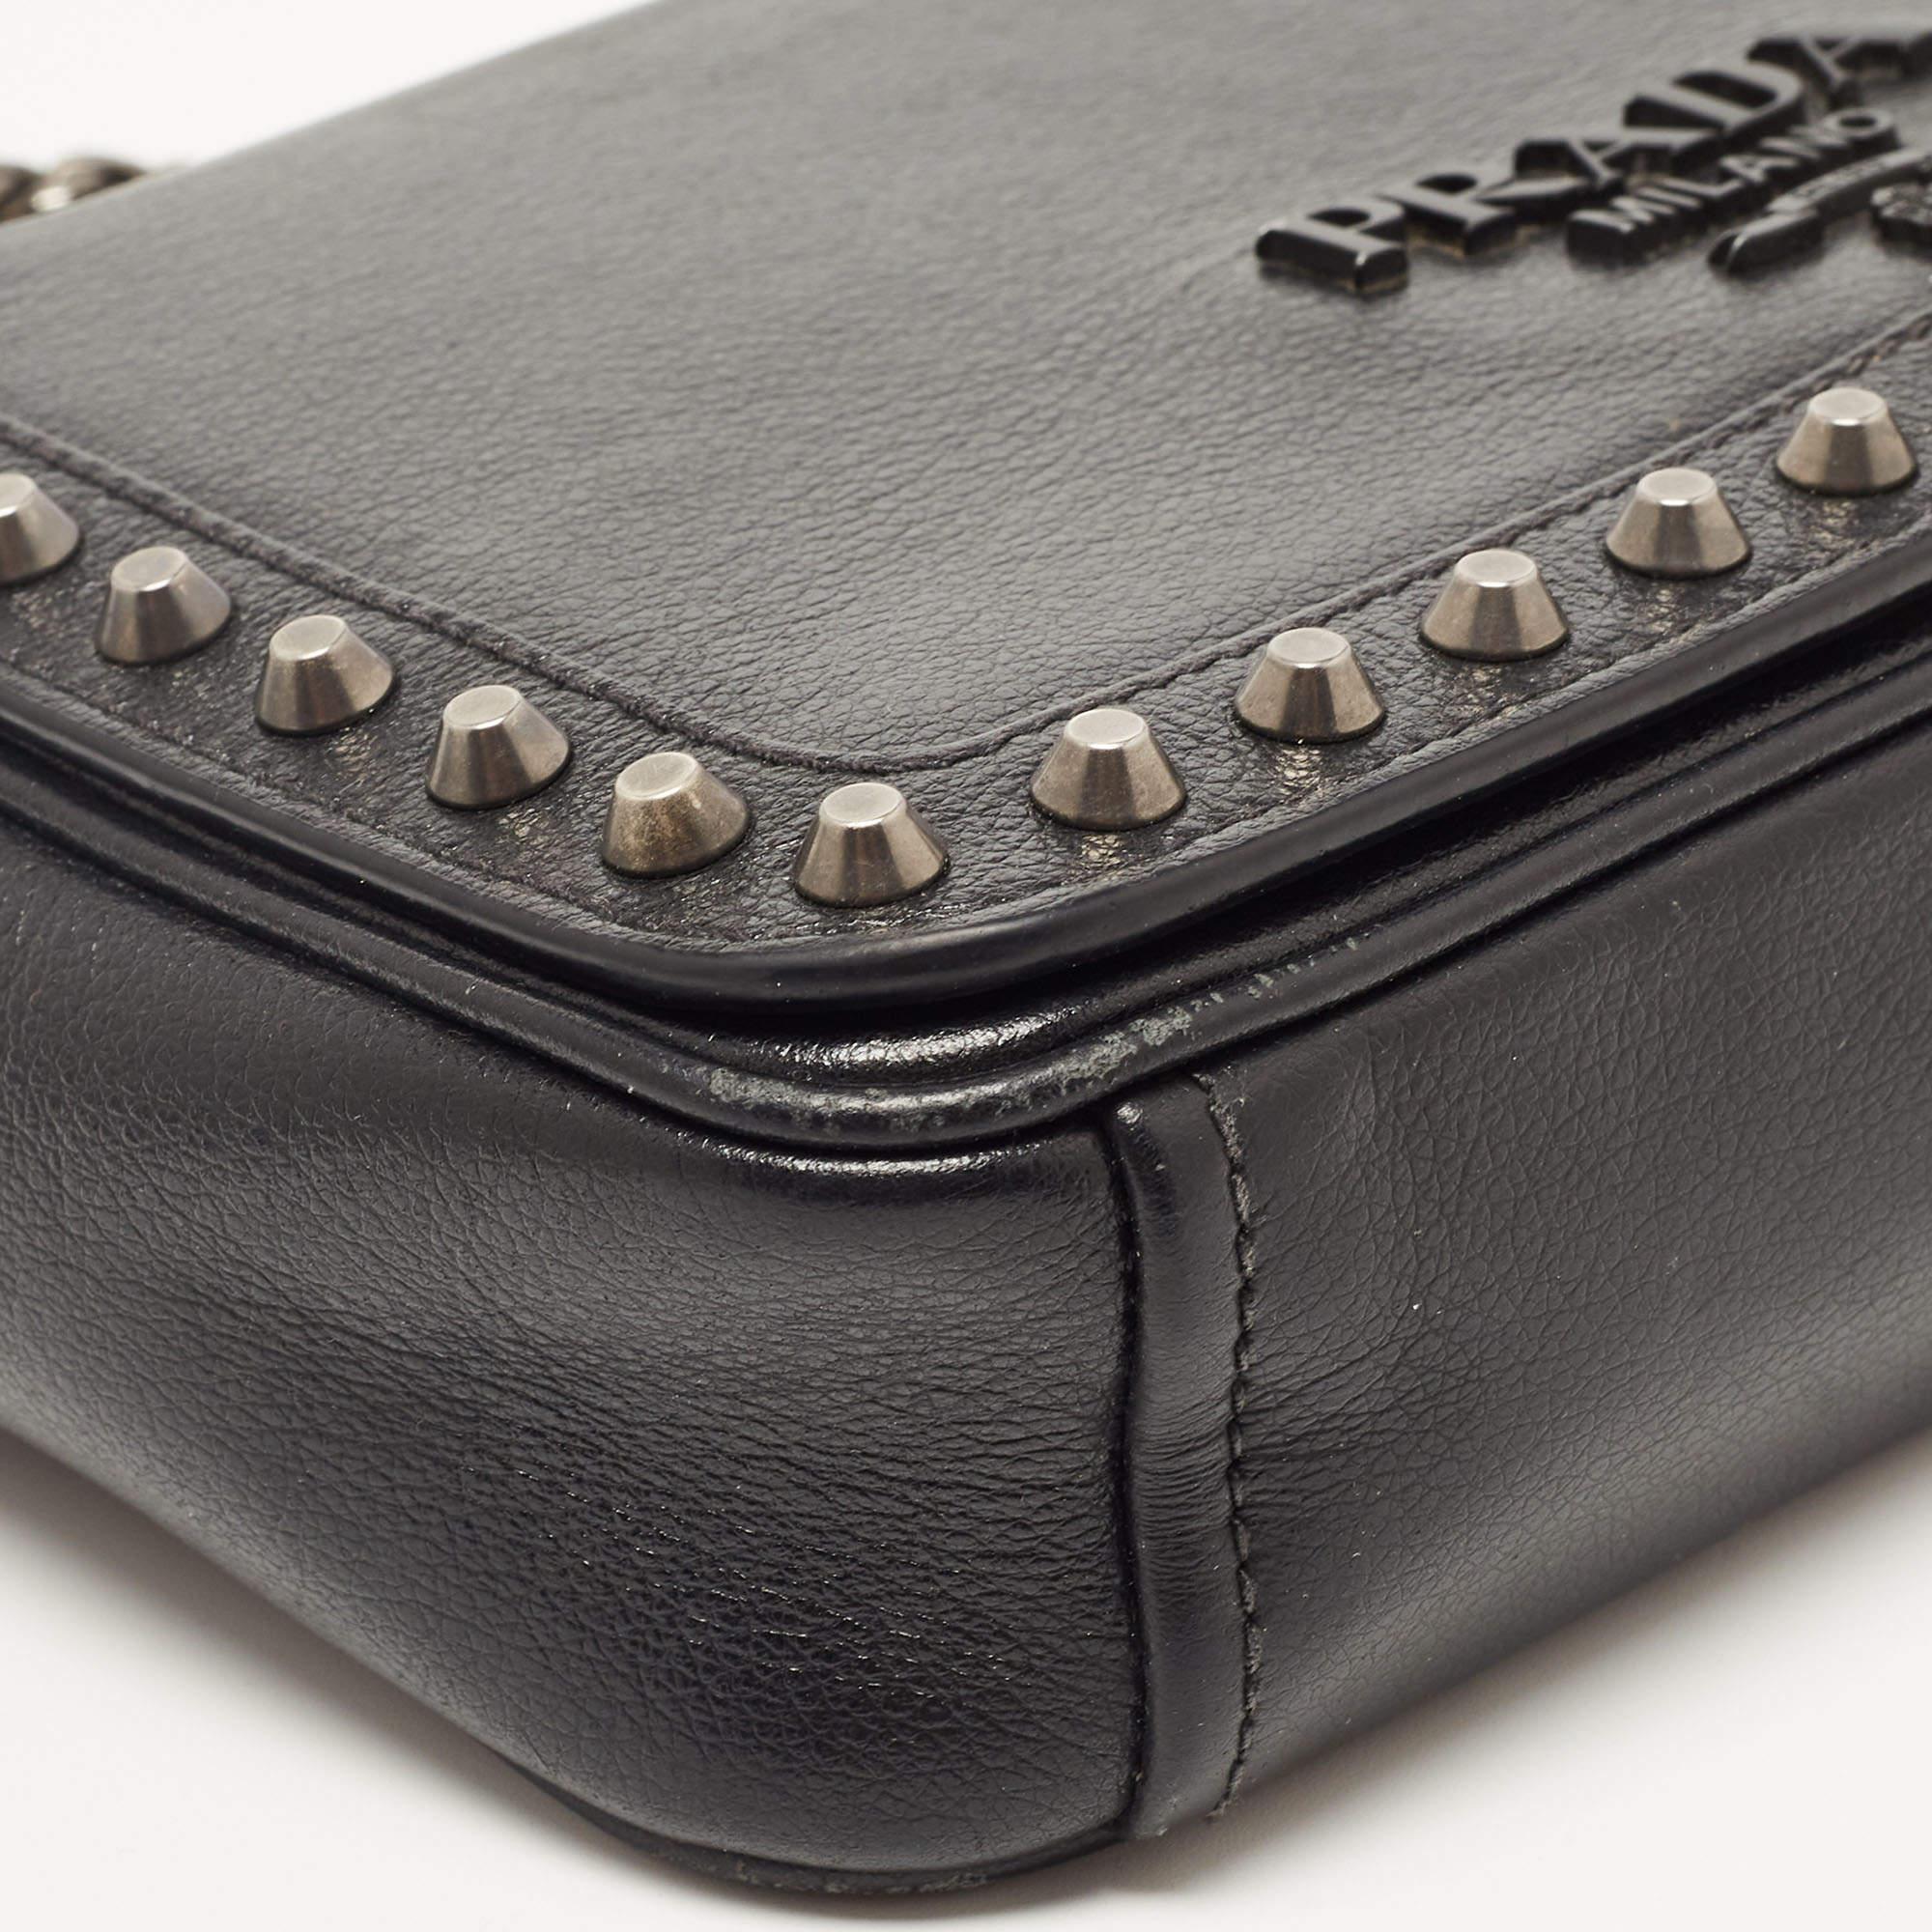 Prada Black Glace Leather Studded Flap Shoulder Bag 6